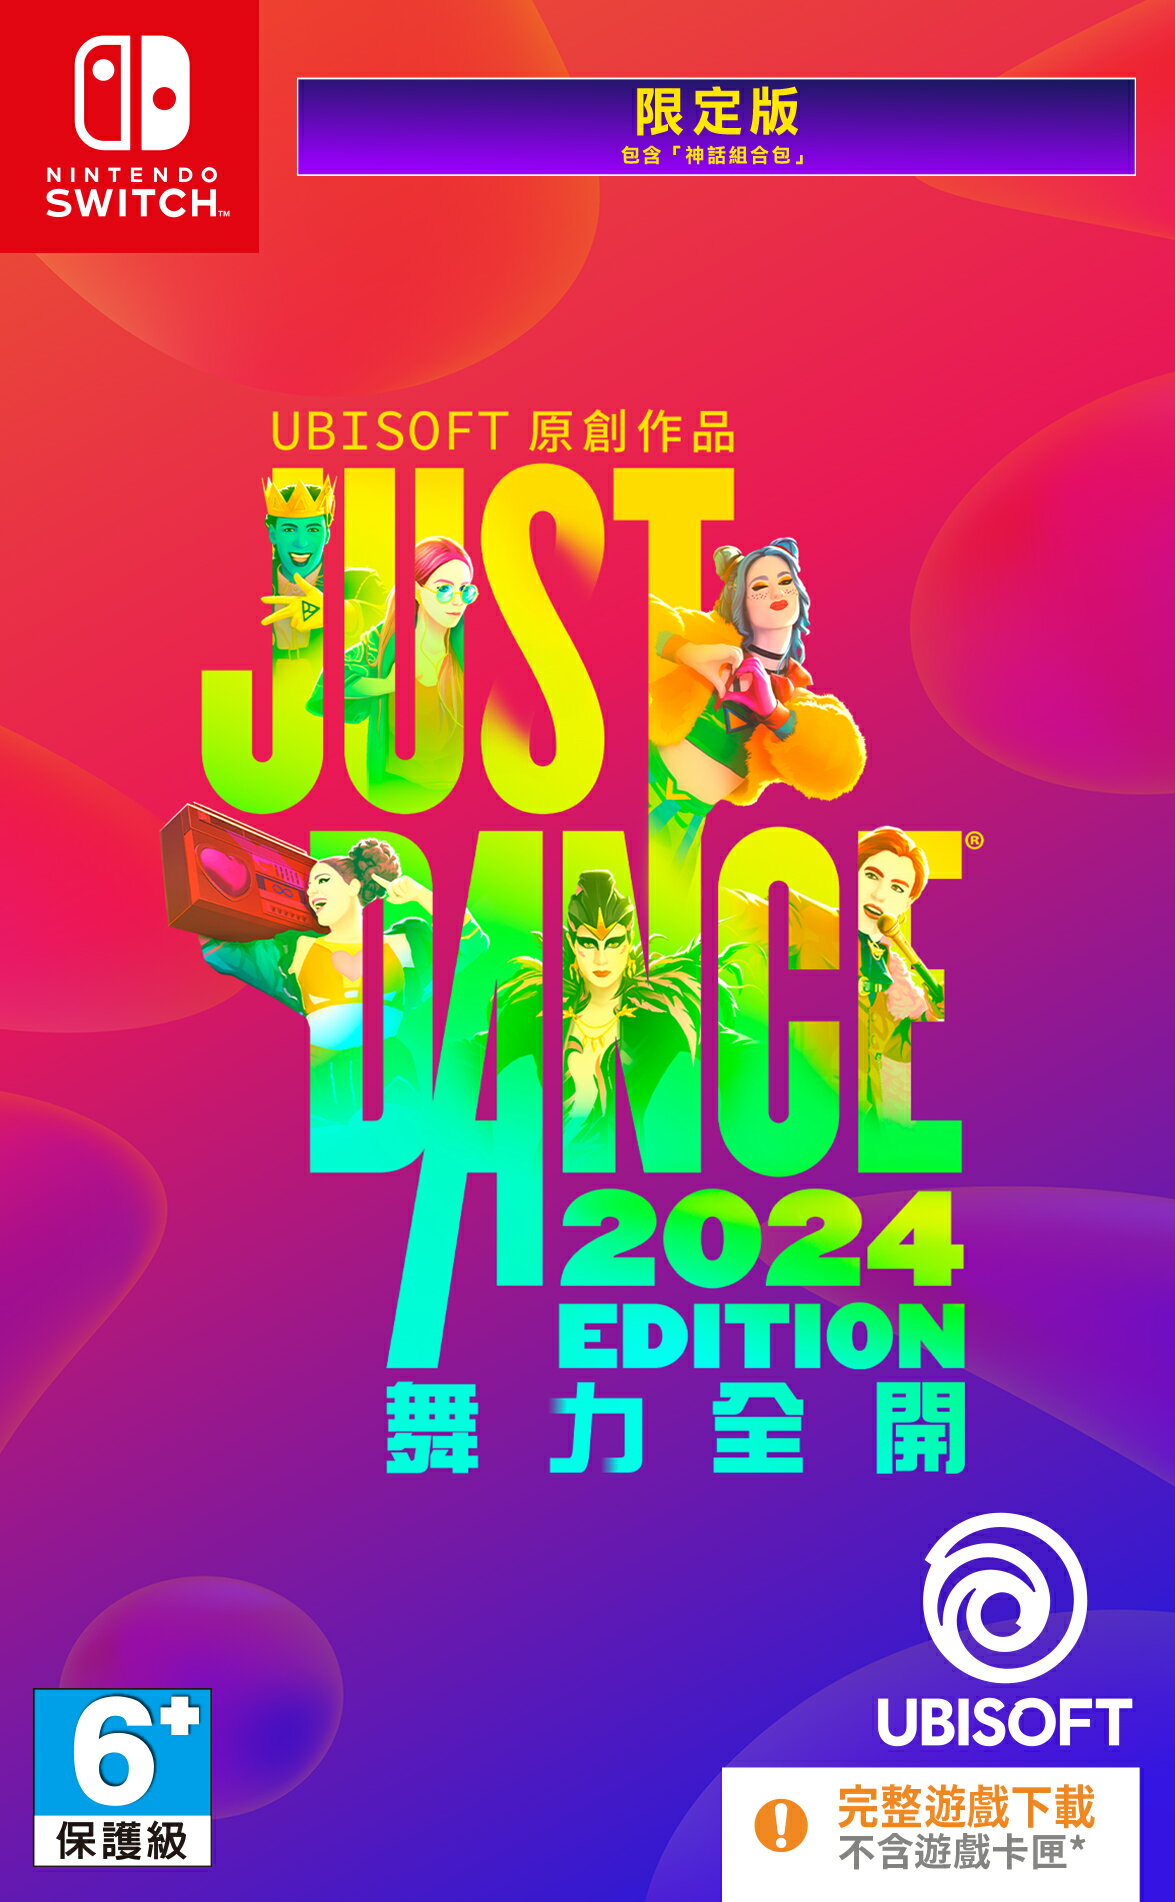 現貨供應中 中文版 [普遍級] NS JUST DANCE 舞力全開 2024